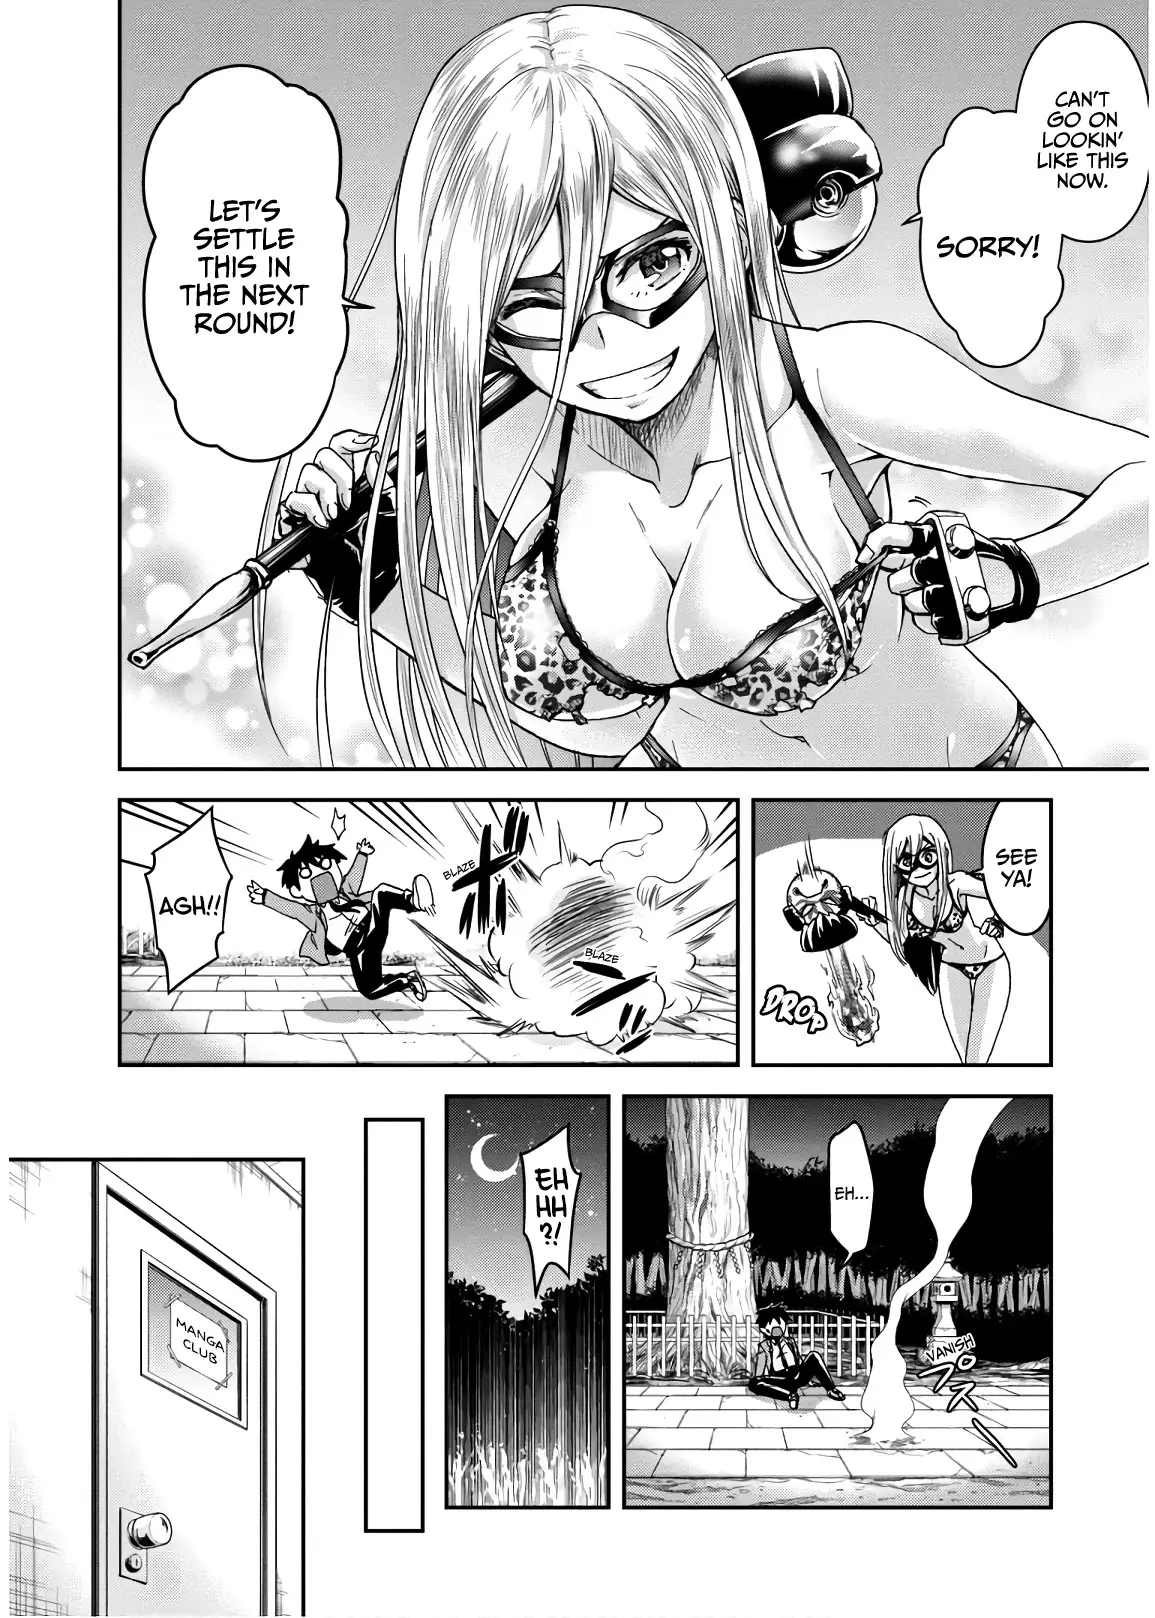 Shinobi Kill - 7 page 6